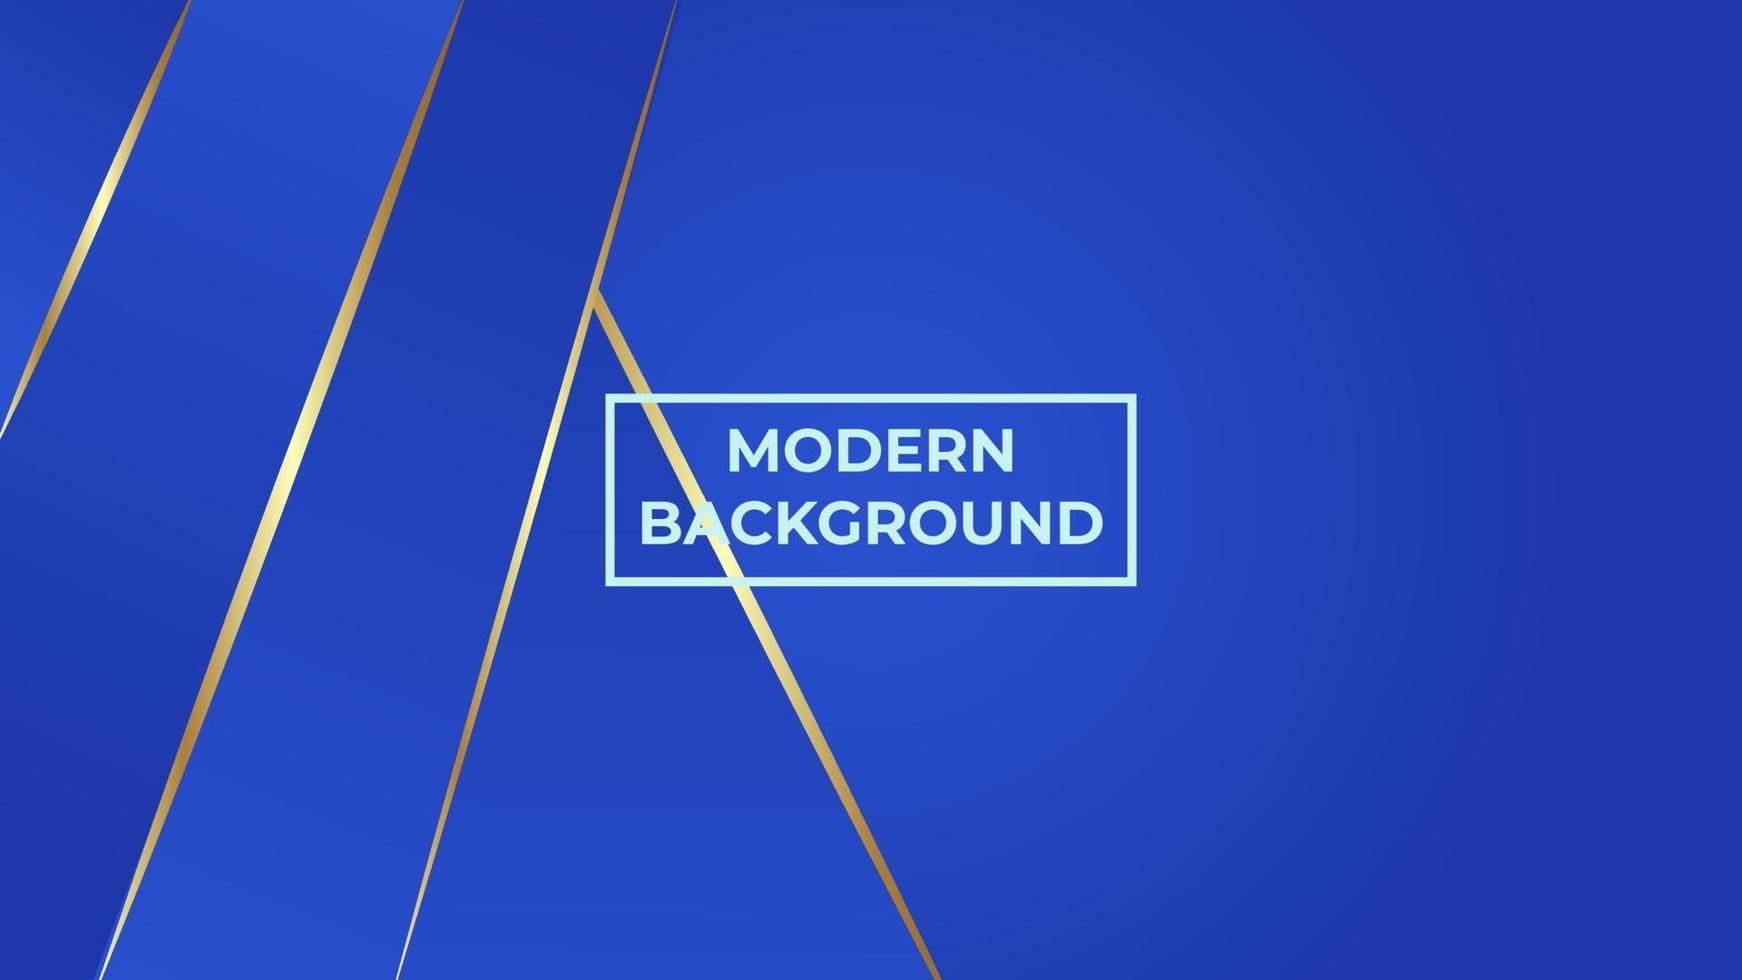 moderner Hintergrund mit goldenen Verlaufslinien und dunkelblauer Farbe, leicht zu bearbeiten vektor